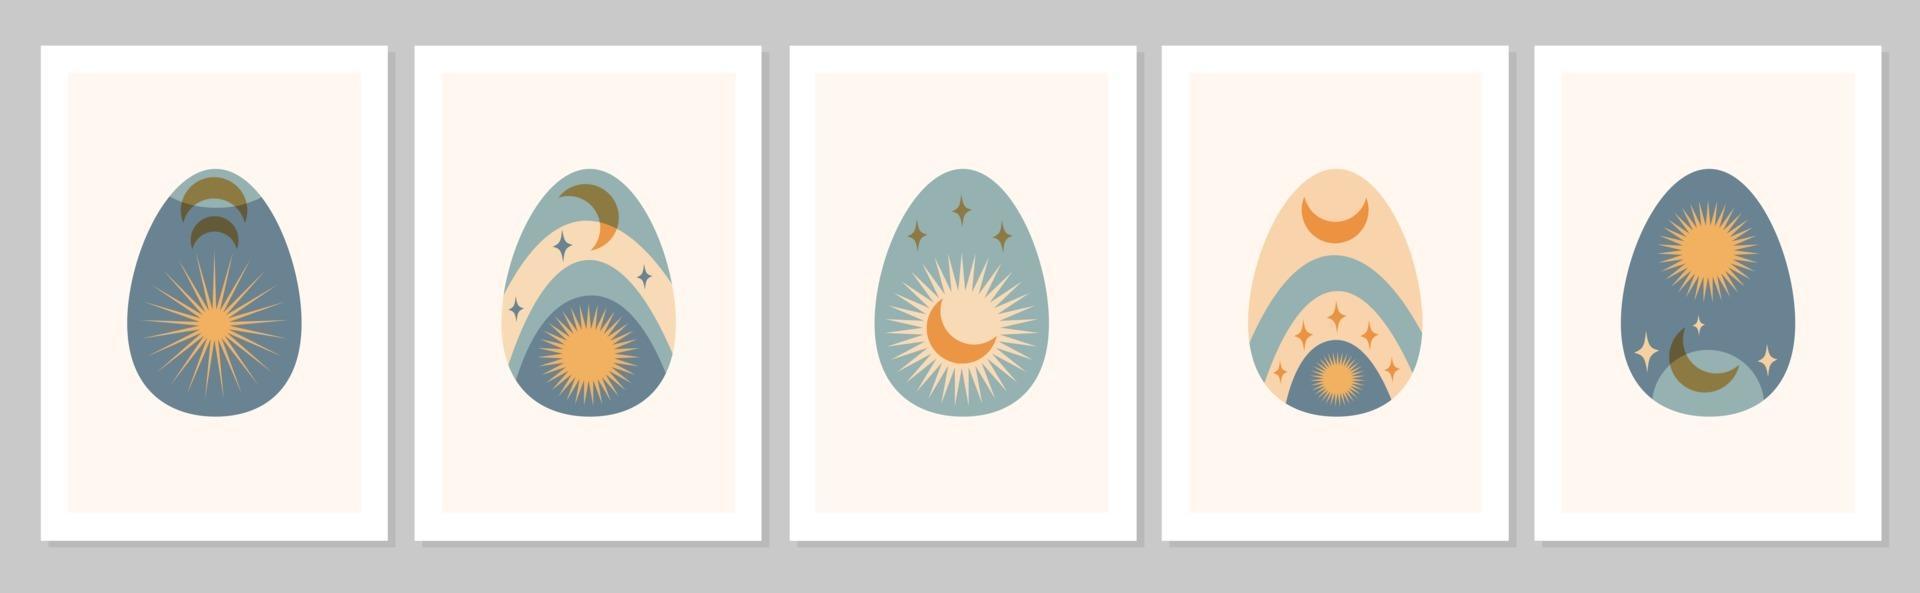 disegnata a mano felice pasqua insieme poster boho astratti uova con luna, sole, stella isolato su sfondo beige. illustrazione piatta vettoriale. design per motivo, logo, invito, biglietto di auguri vettore